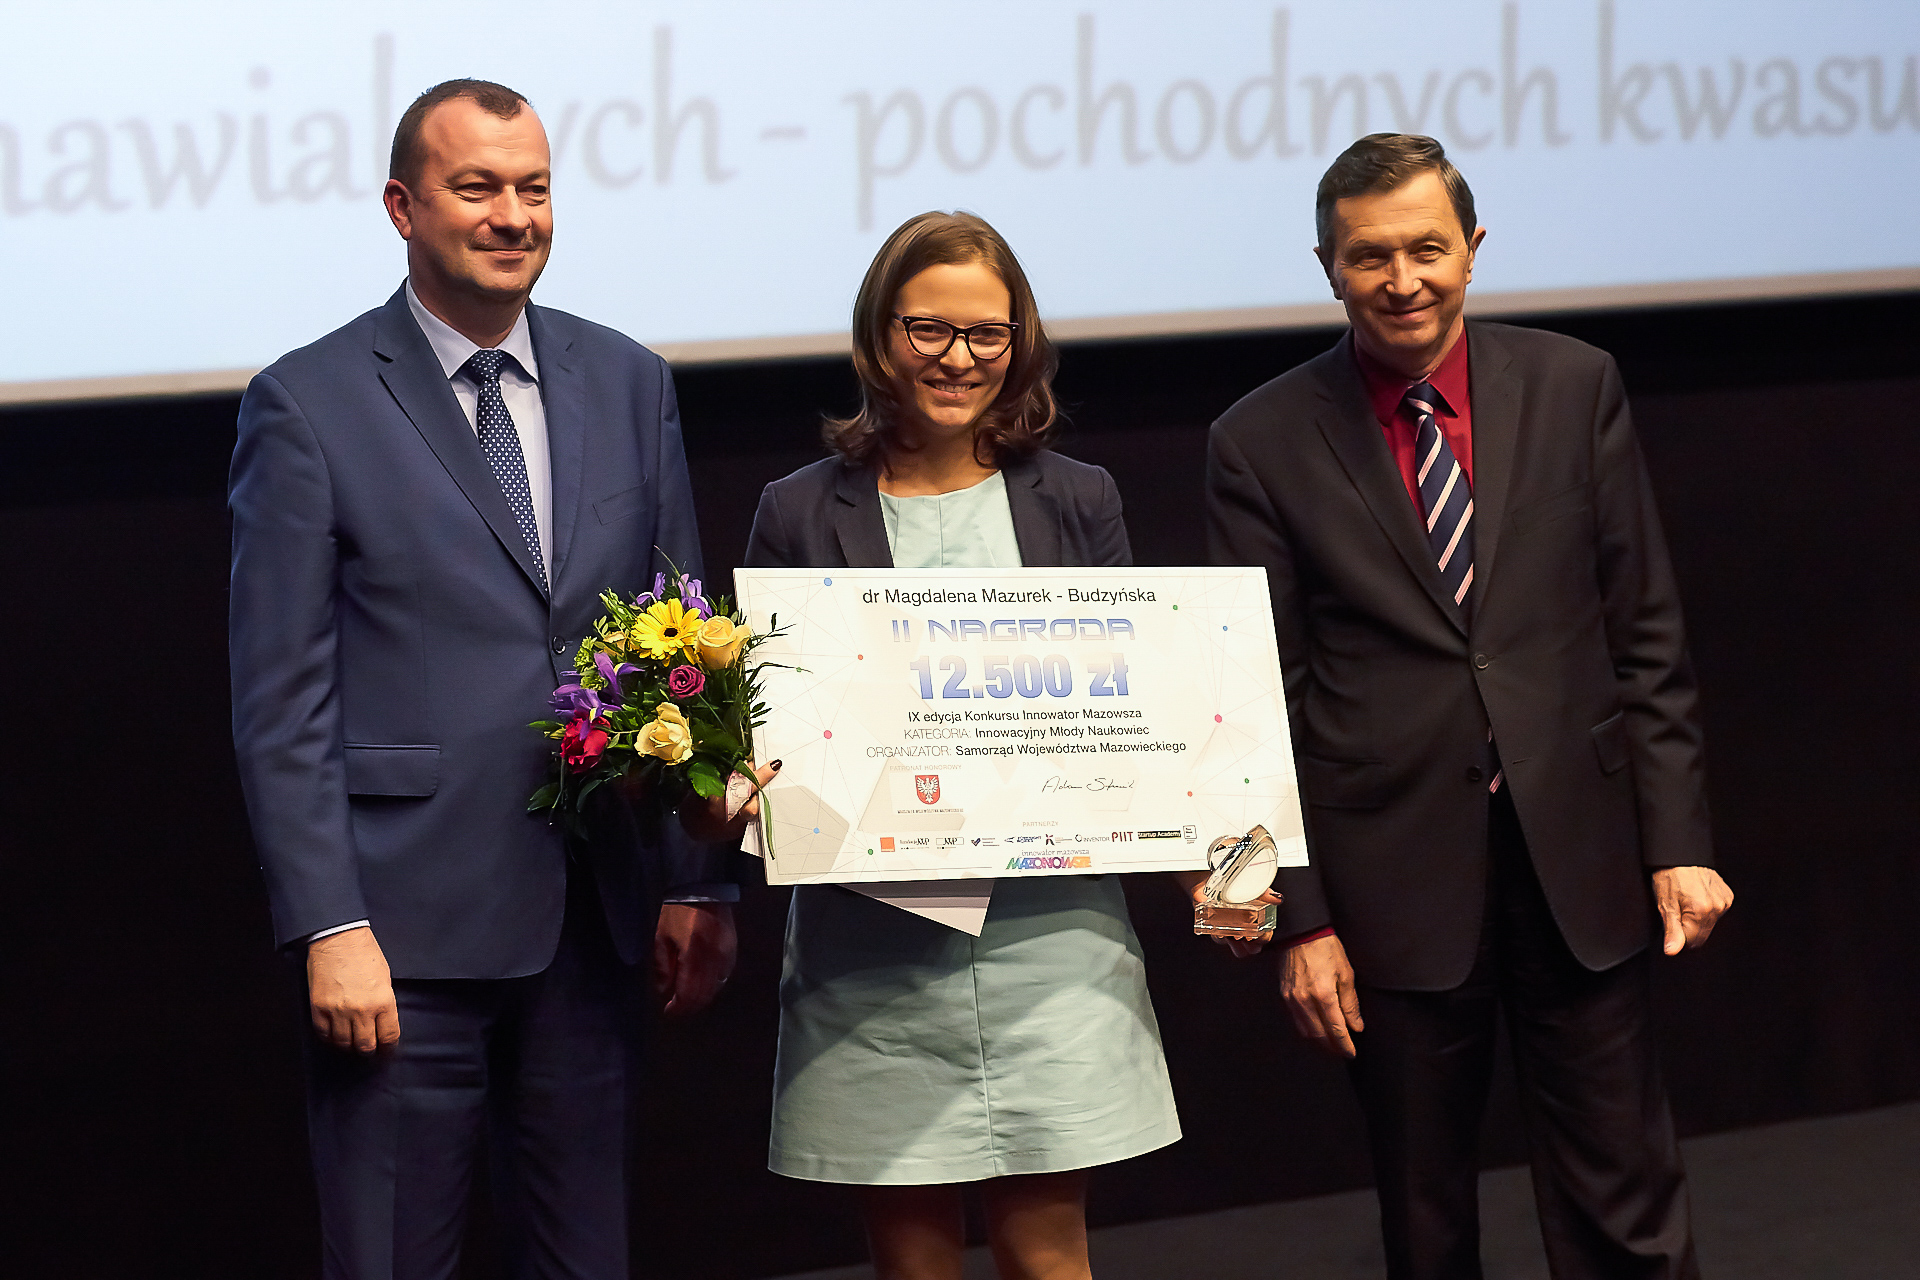 Wręczenie nagrody przez Wicemarszałka Wiesława Raboszuka za II miejsce w kategorii Innowacyjny Młody Naukowiec dr Magdalenie Budzyńskiej Mazurek.